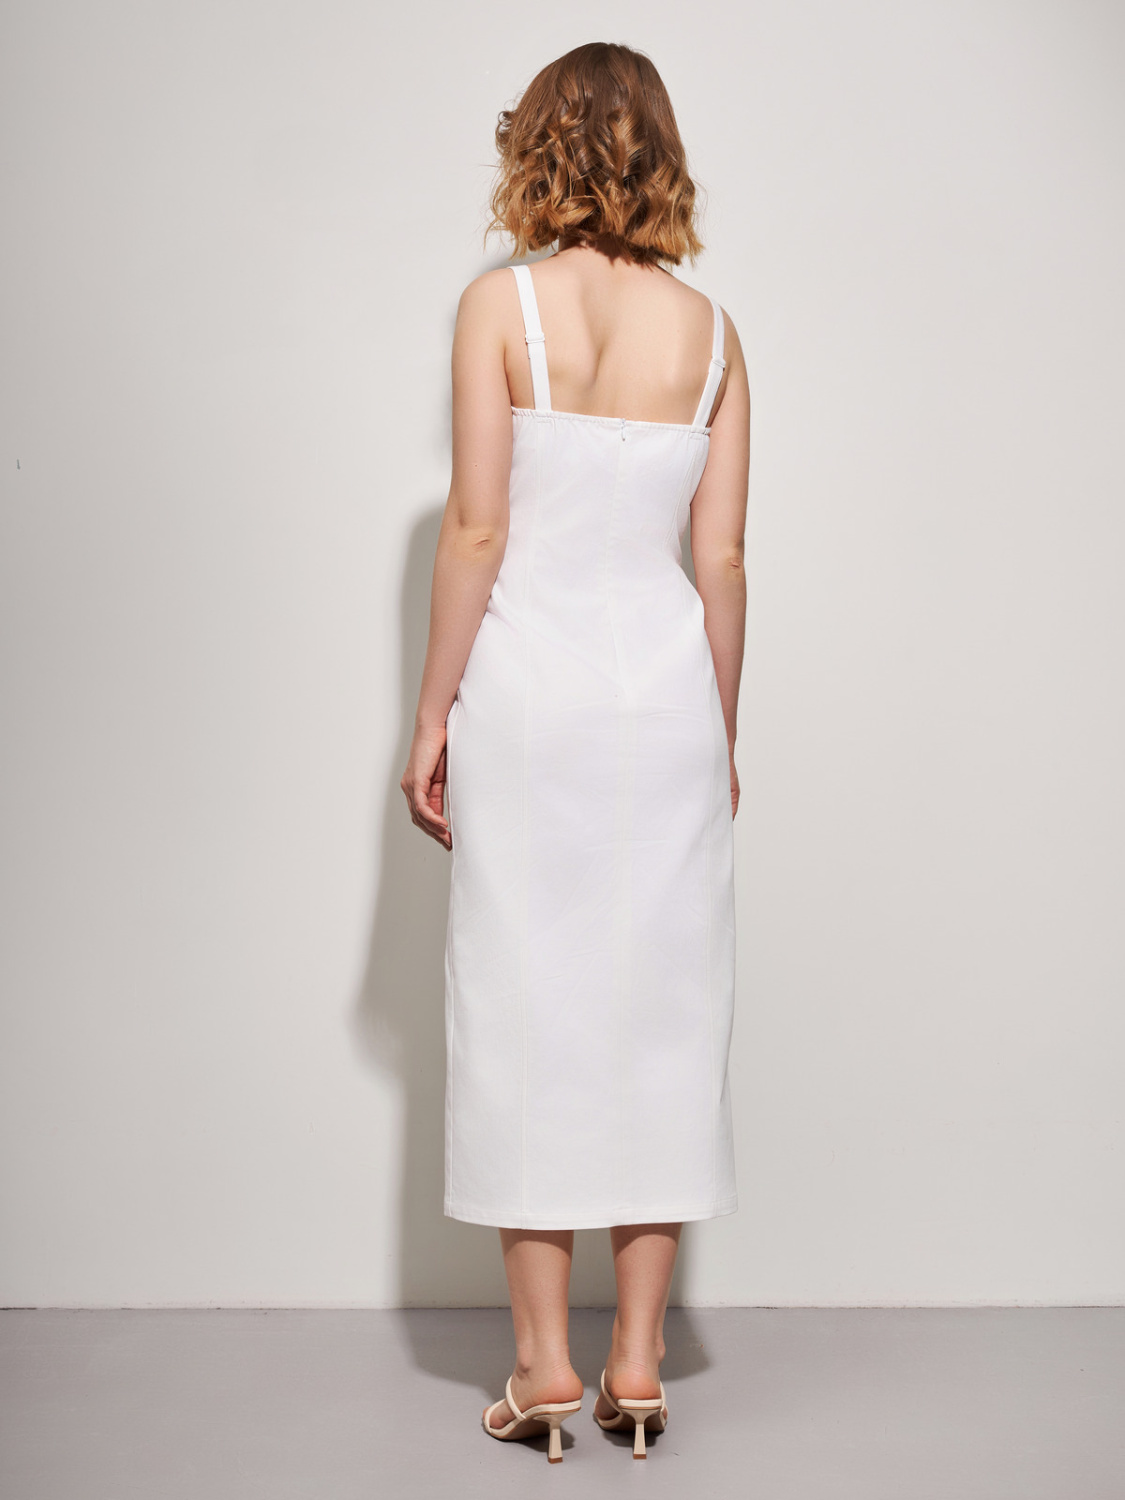 Корсетное платье из хлопка белого цвета